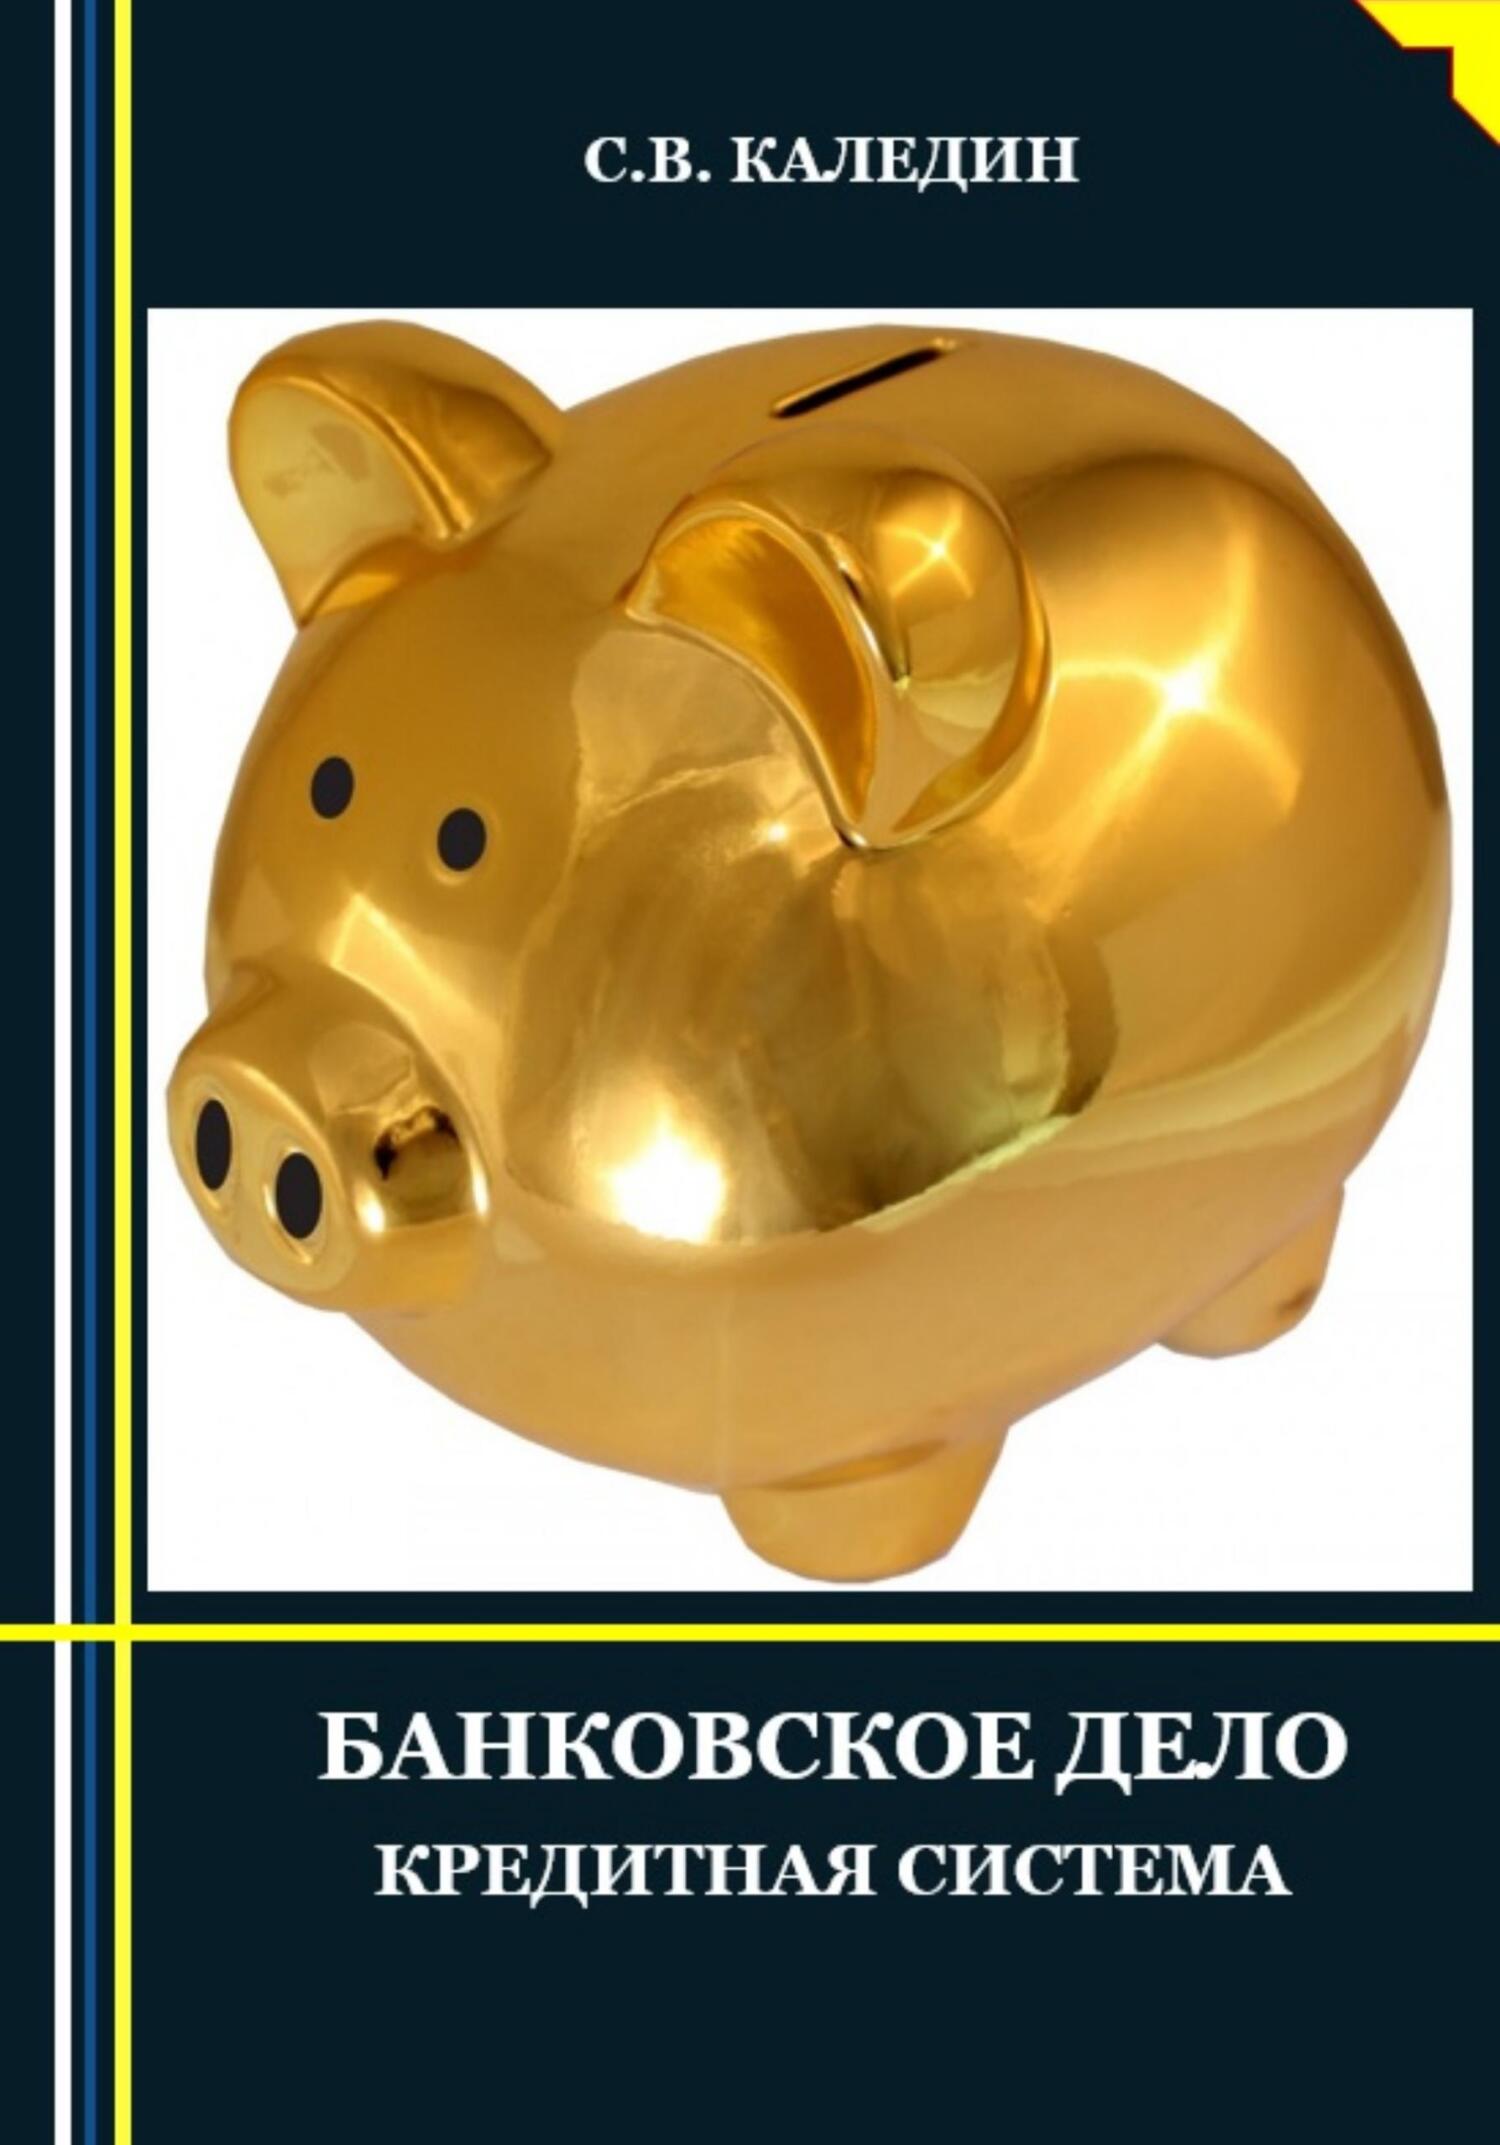 Книга  Банковское дело. Кредитная система созданная Сергей Каледин может относится к жанру банковское дело. Стоимость электронной книги Банковское дело. Кредитная система с идентификатором 68861685 составляет 299.00 руб.